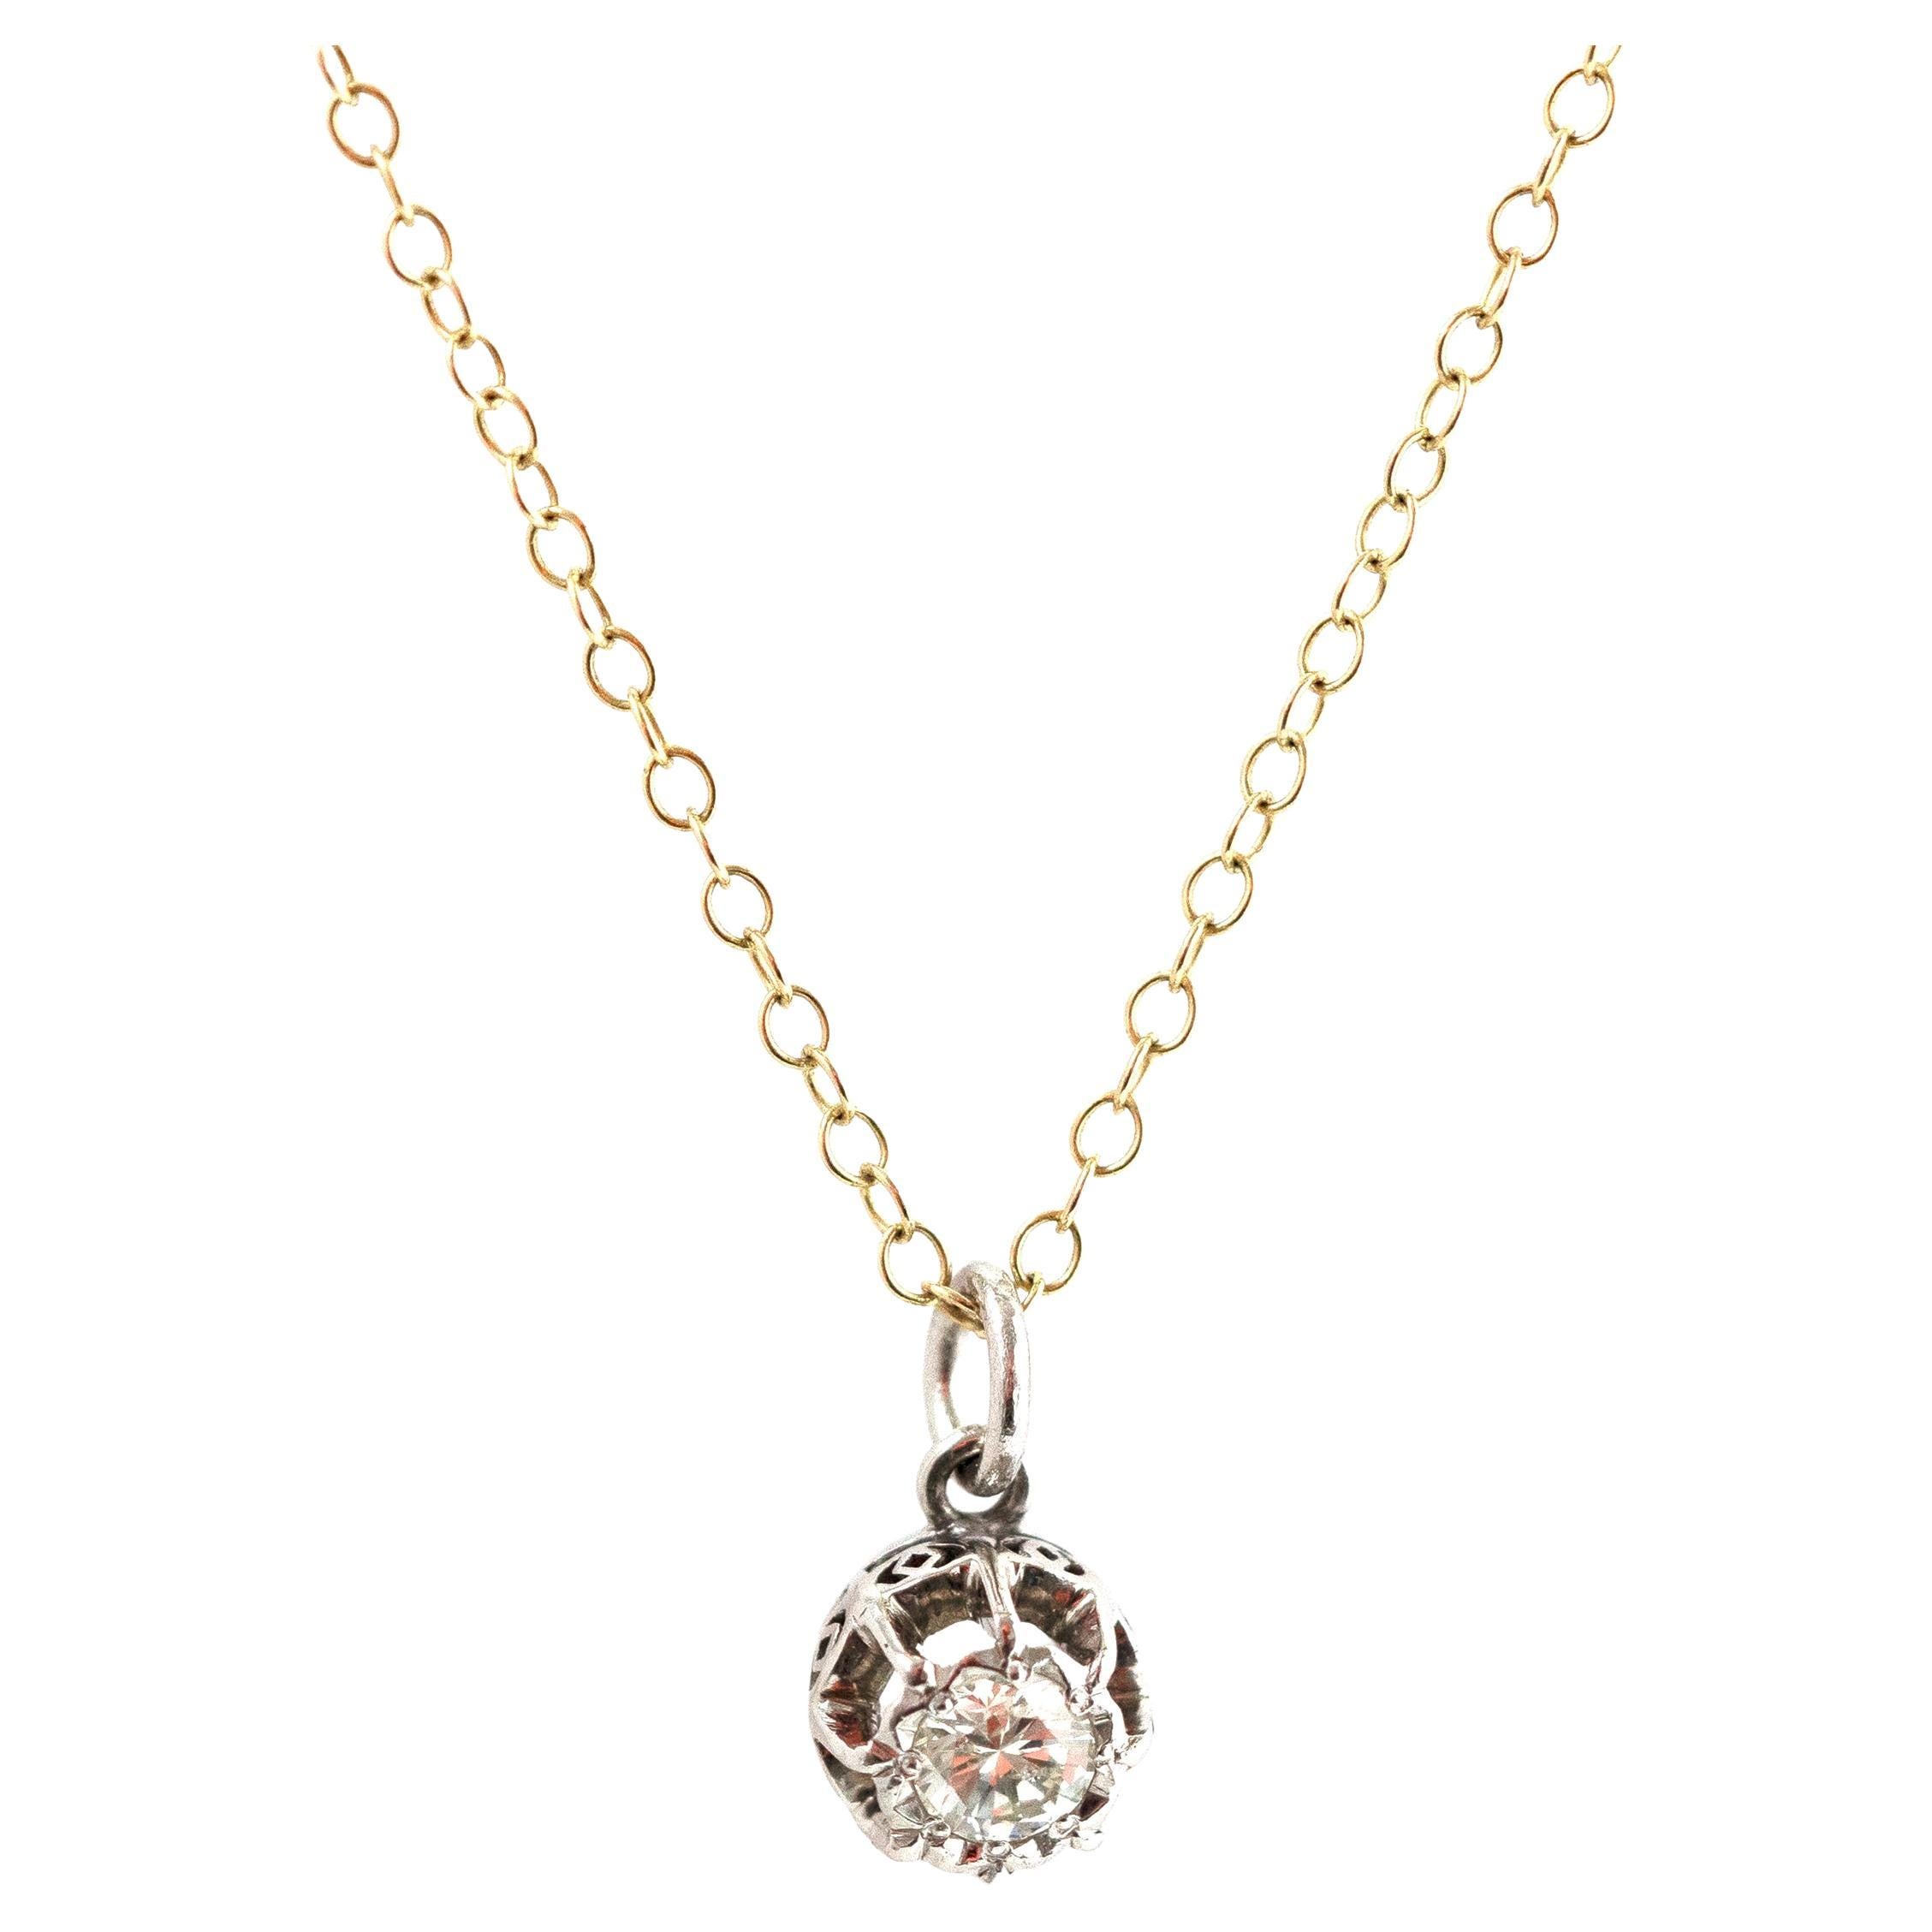 Vintage 1970s 18ct Gold 0.36ct Diamond Pendant Necklace